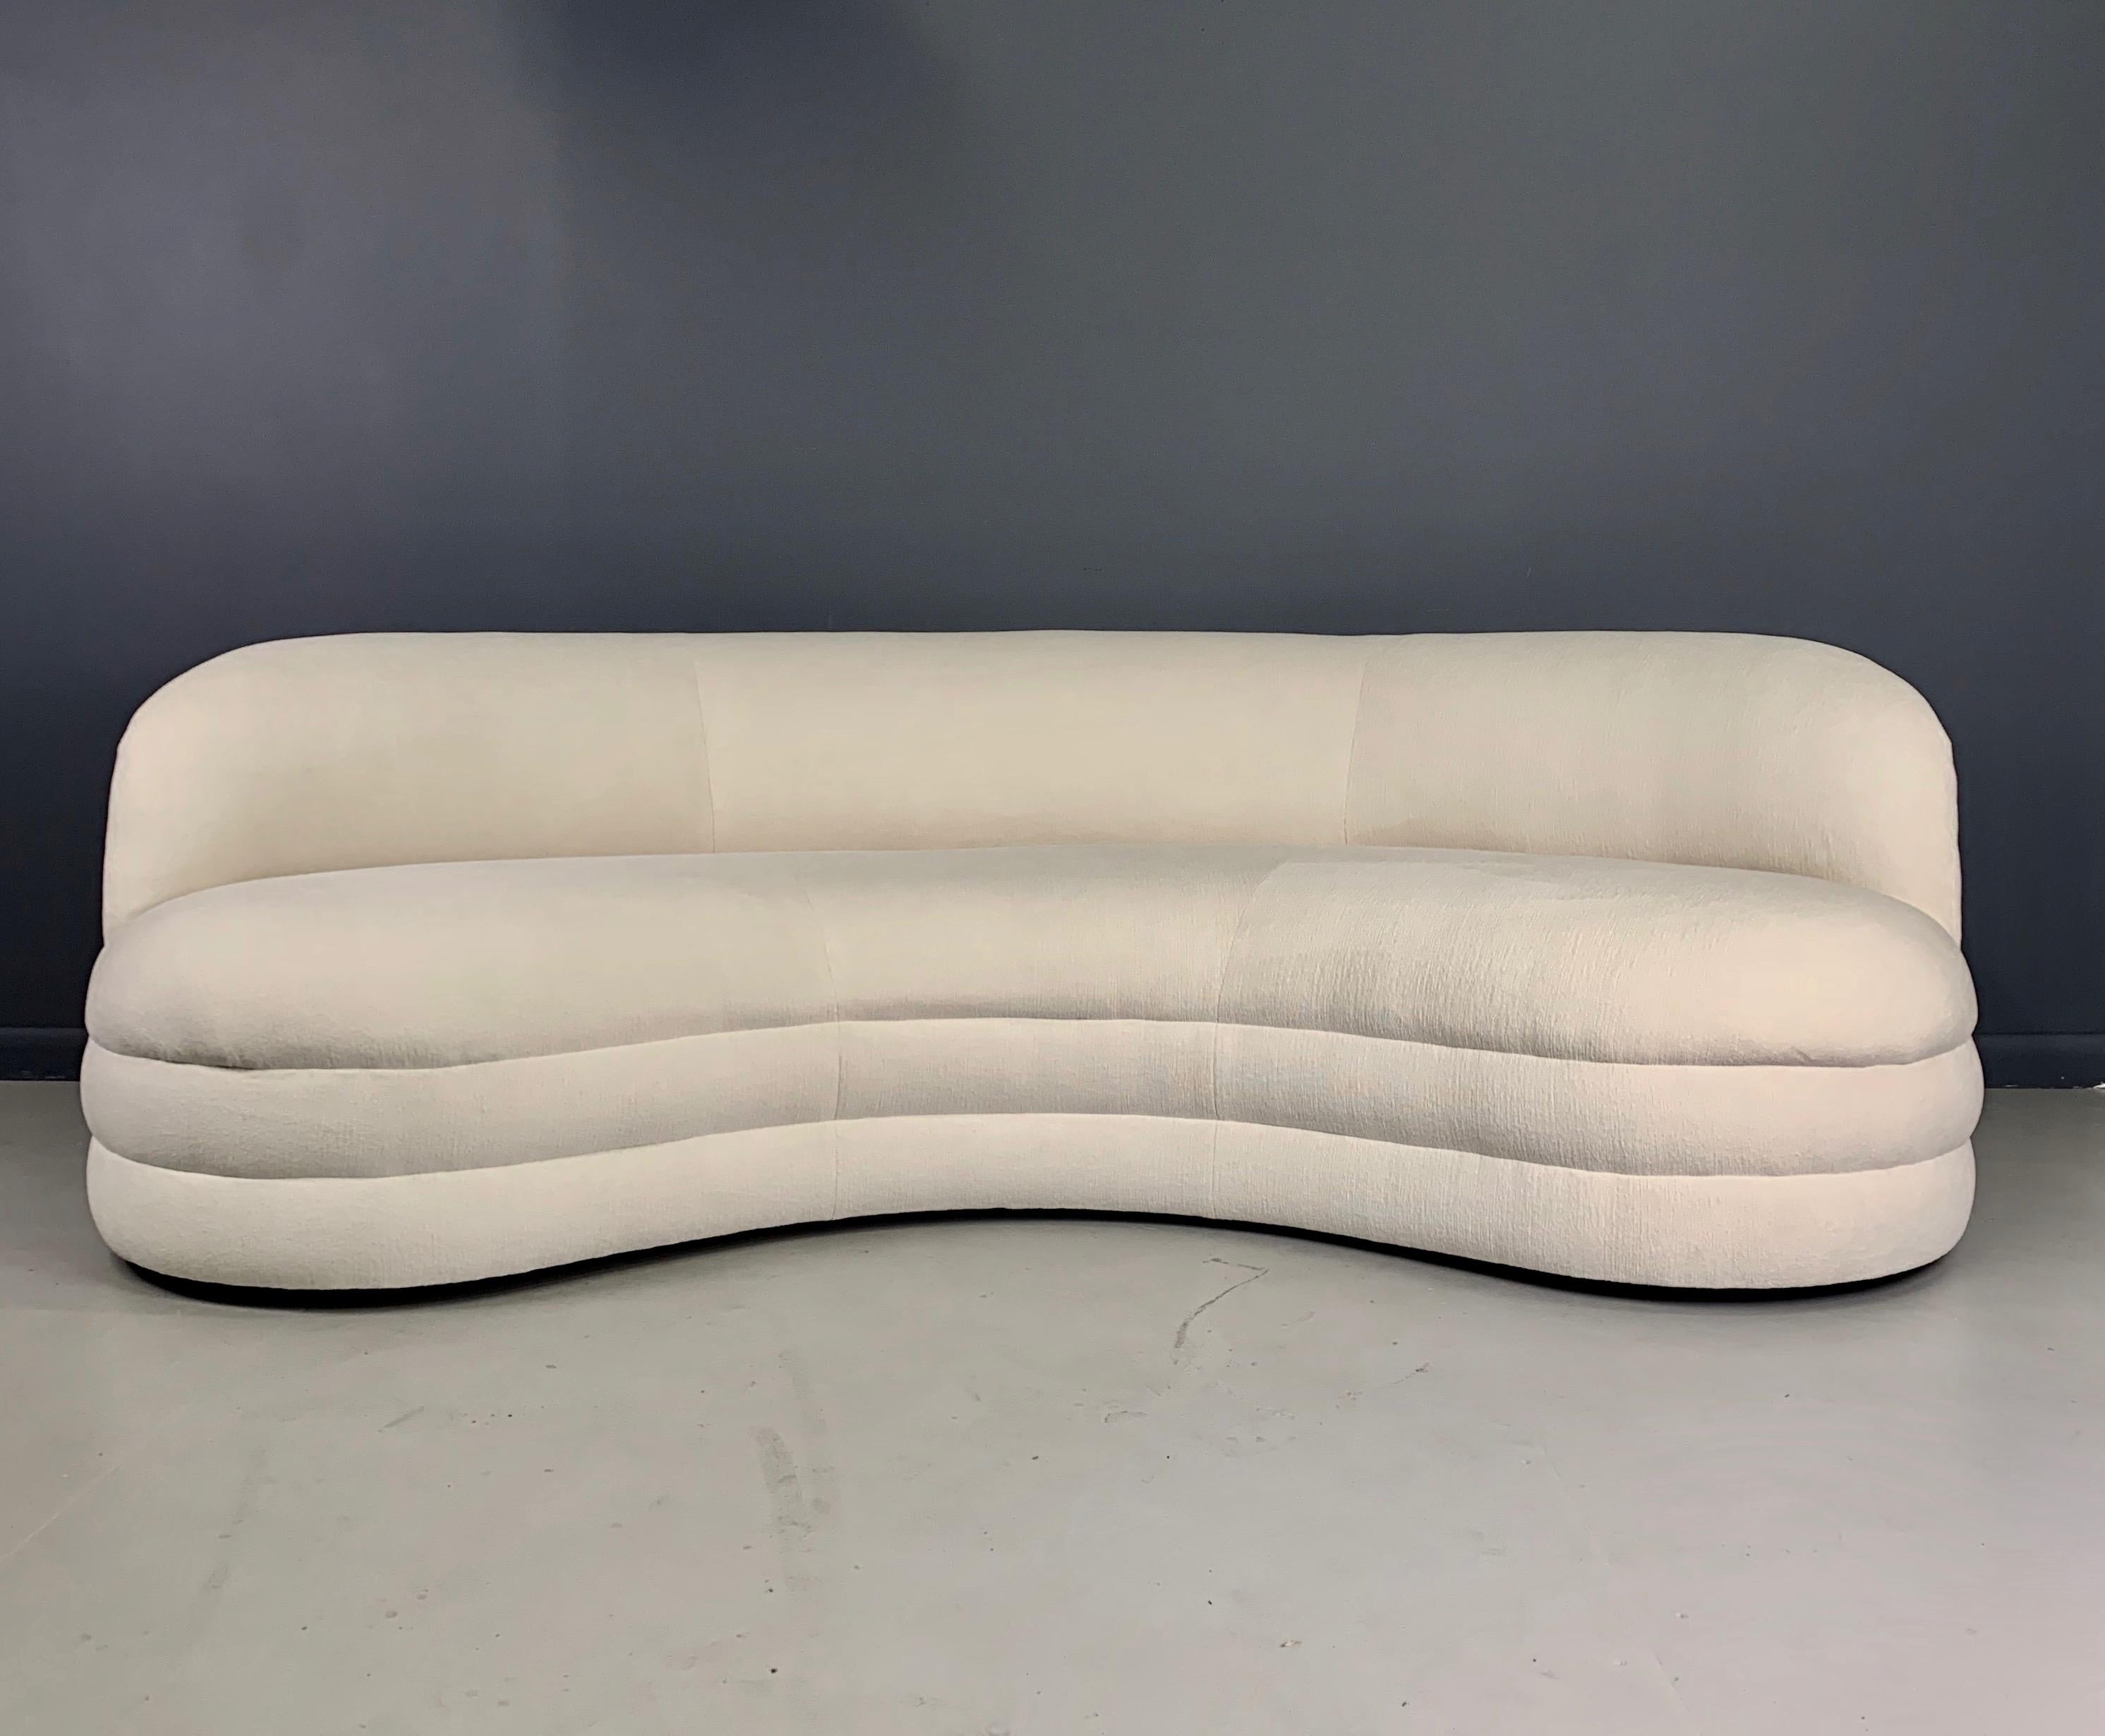 Ein nierenförmiges Sofa mit schönem, skulpturalem, modernem Design und geschwungenem Rücken. Diese Sofas werden neu produziert und sind handgefertigt mit einem massiven Hartholzrahmen, hergestellt in den Vereinigten Staaten mit einer Lieferzeit von